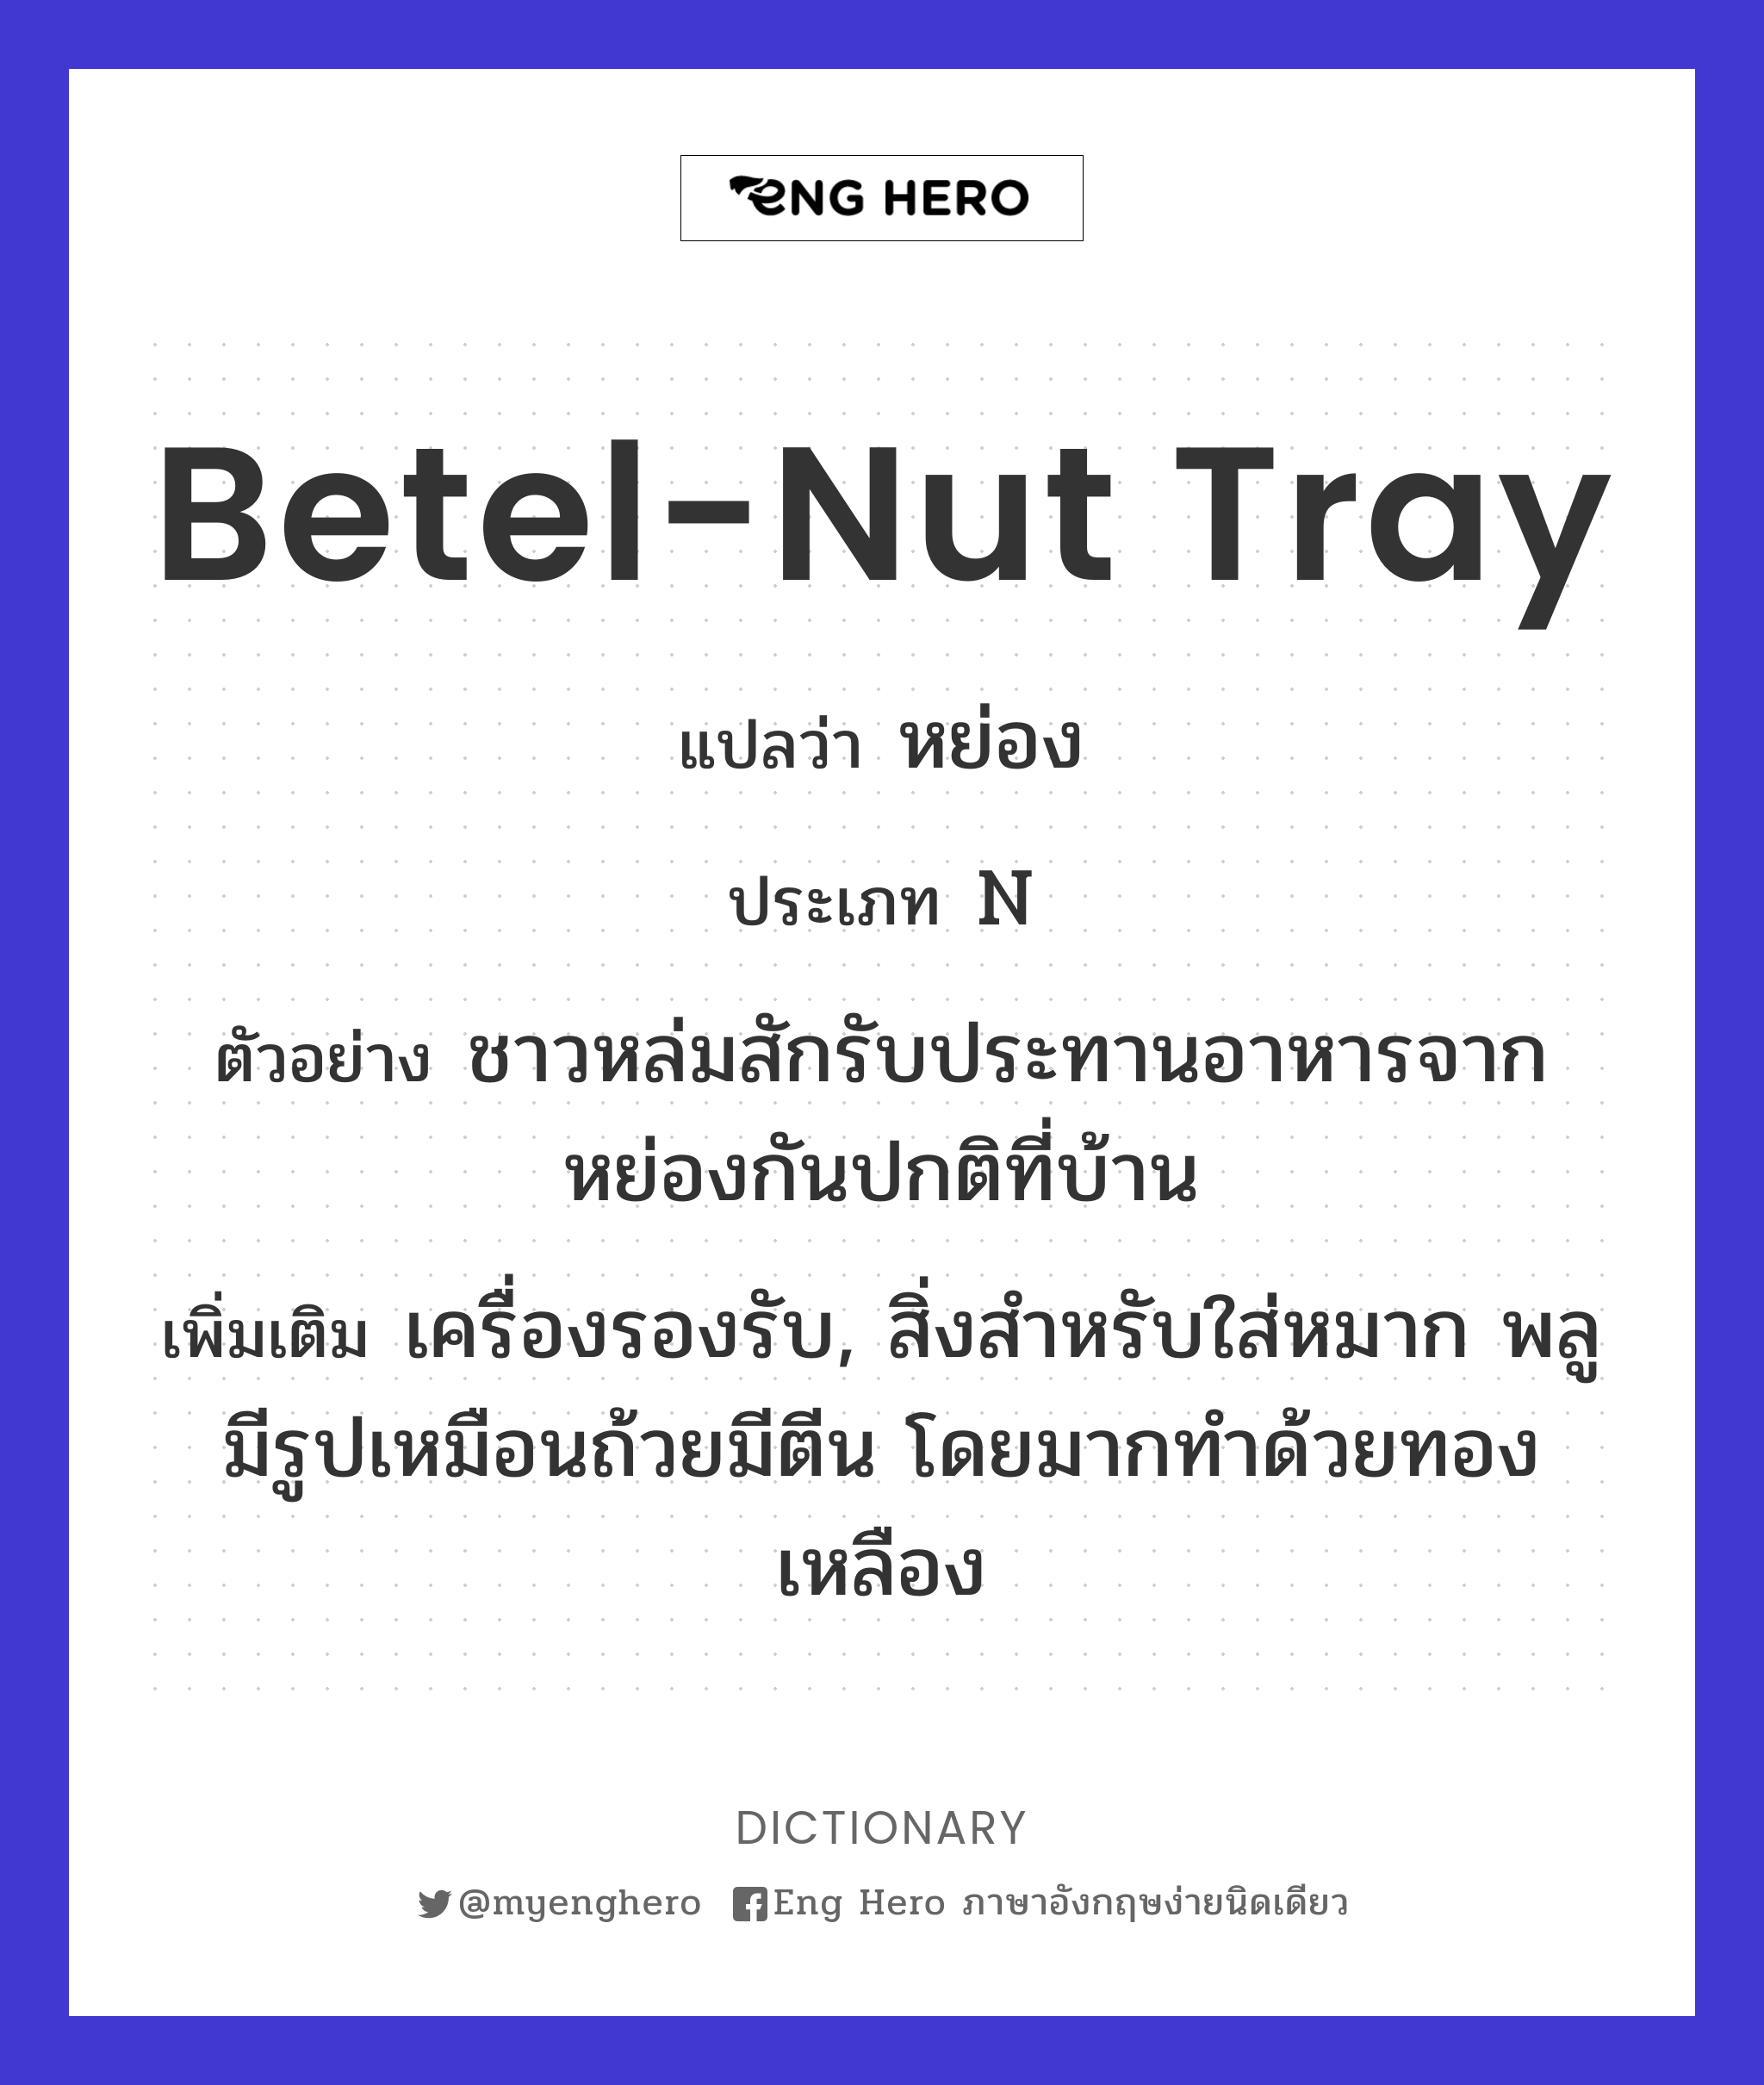 betel-nut tray